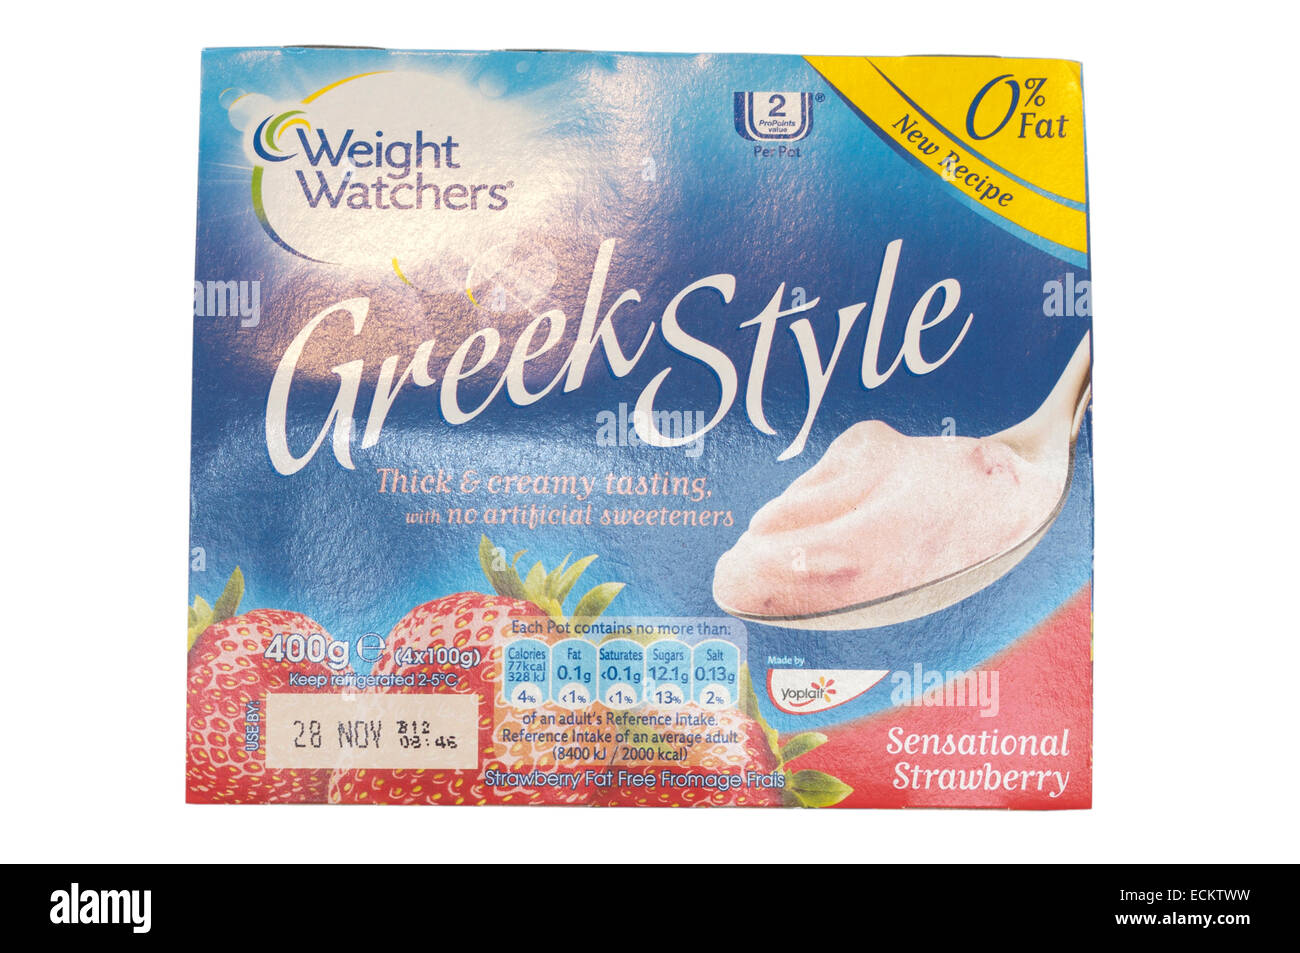 Weight Watchers Greek Style Yogurts Stock Photo